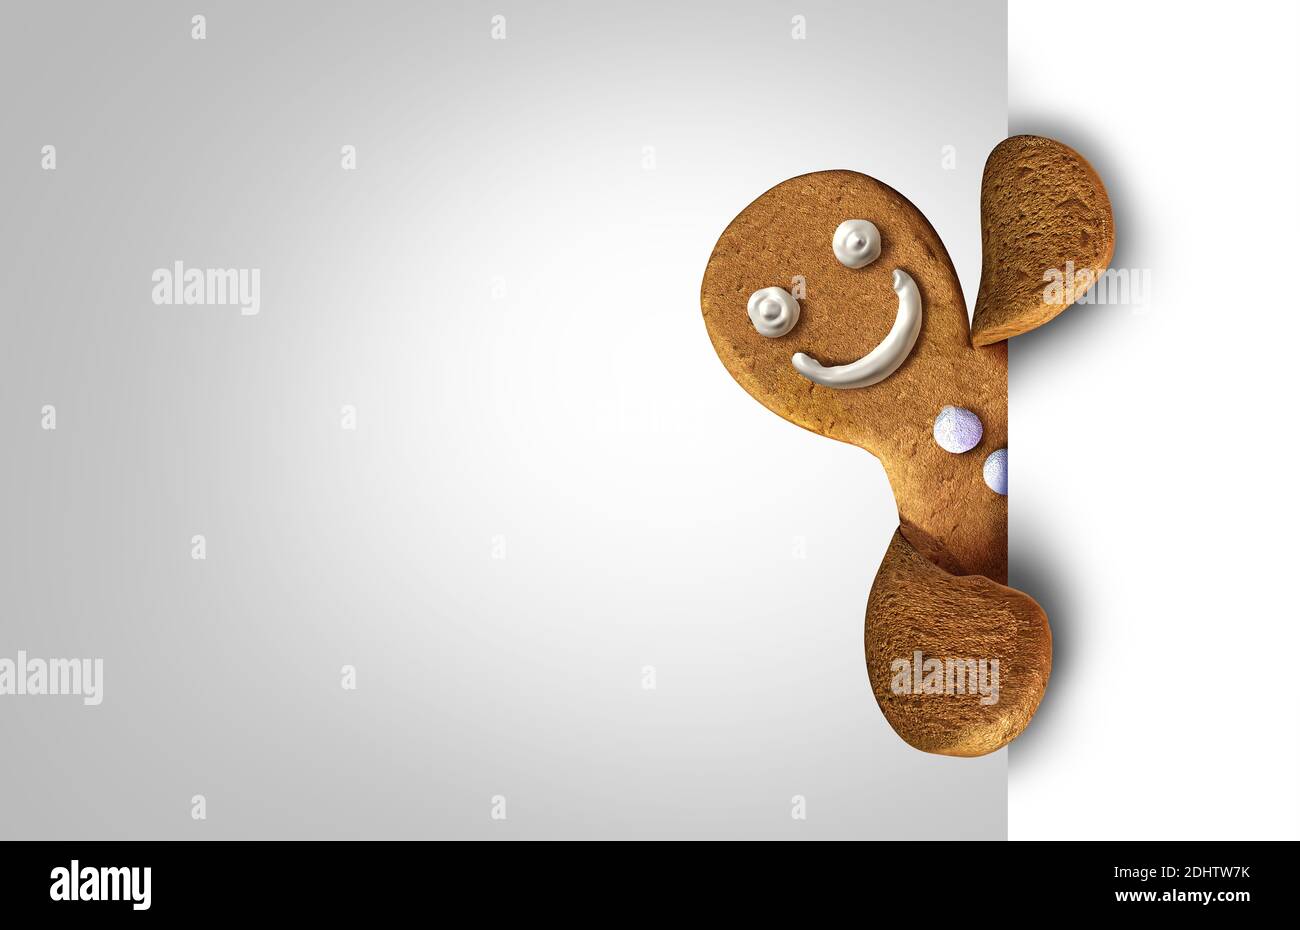 Homme de pain d'épice avec glaçage comme biscuit de vacances tenant un signe ou un personnage de pain de gingembre derrière une carte vierge comme la pâtisserie de fête ou les vacances de fête. Banque D'Images